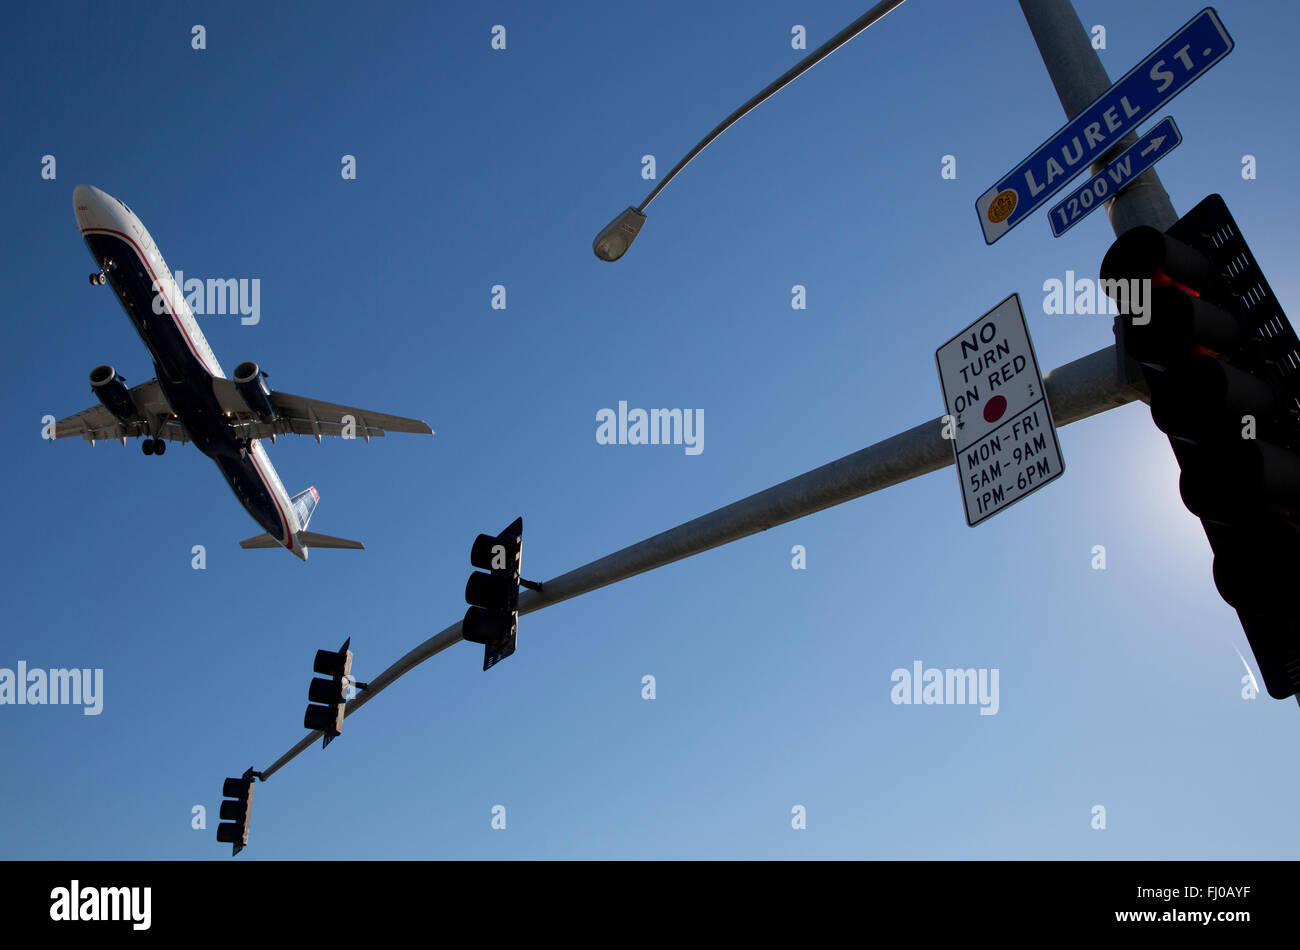 Plane landing, San Diego, California, USA Stock Photo